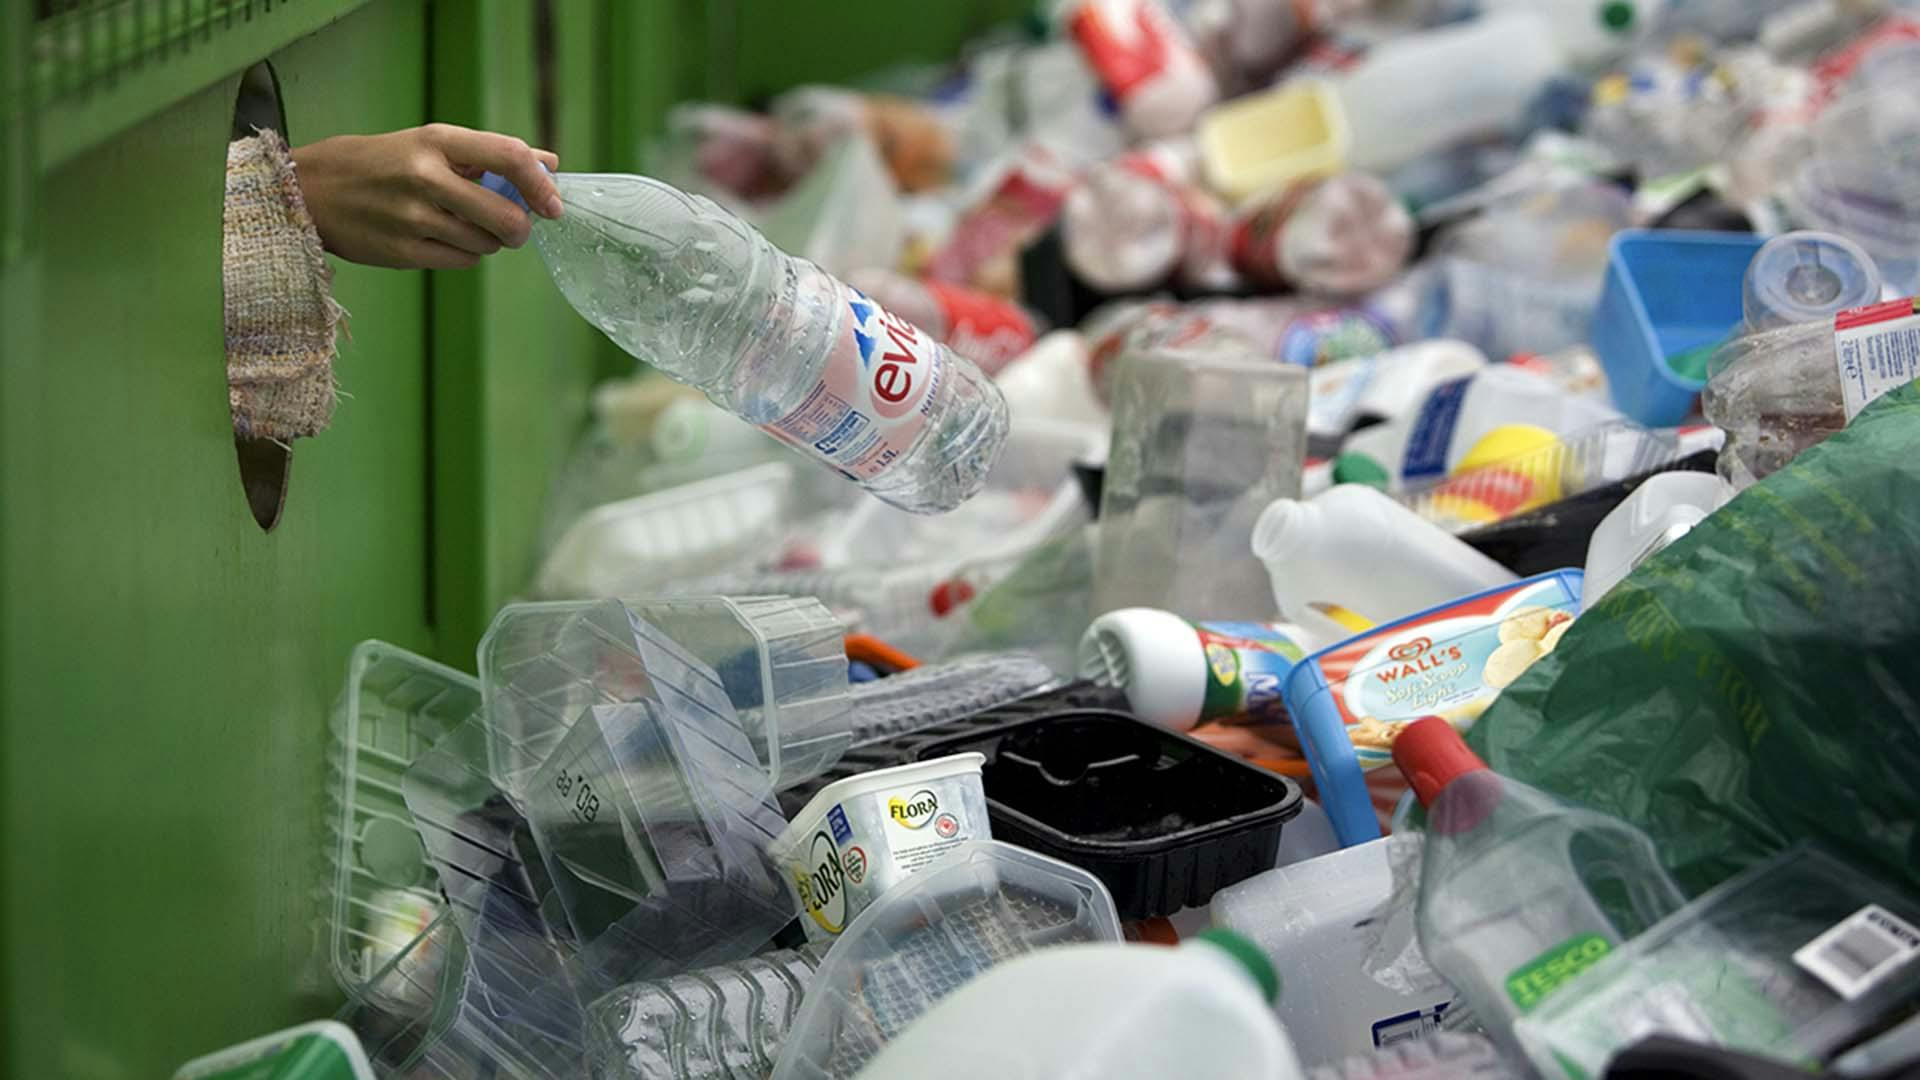 Plastic waste in a recycling bin